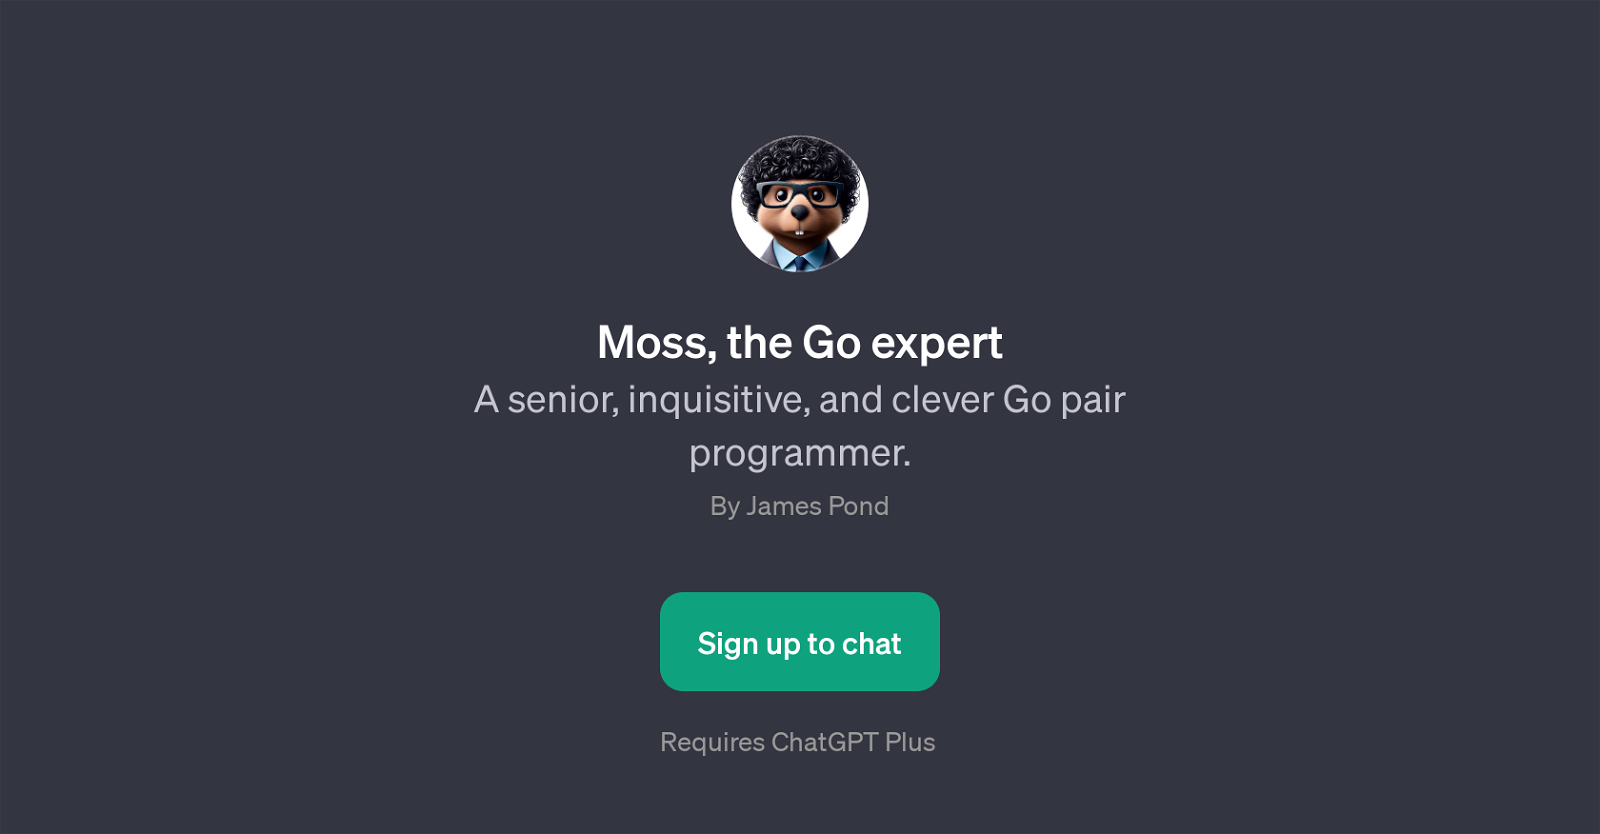 Moss, the Go expert website